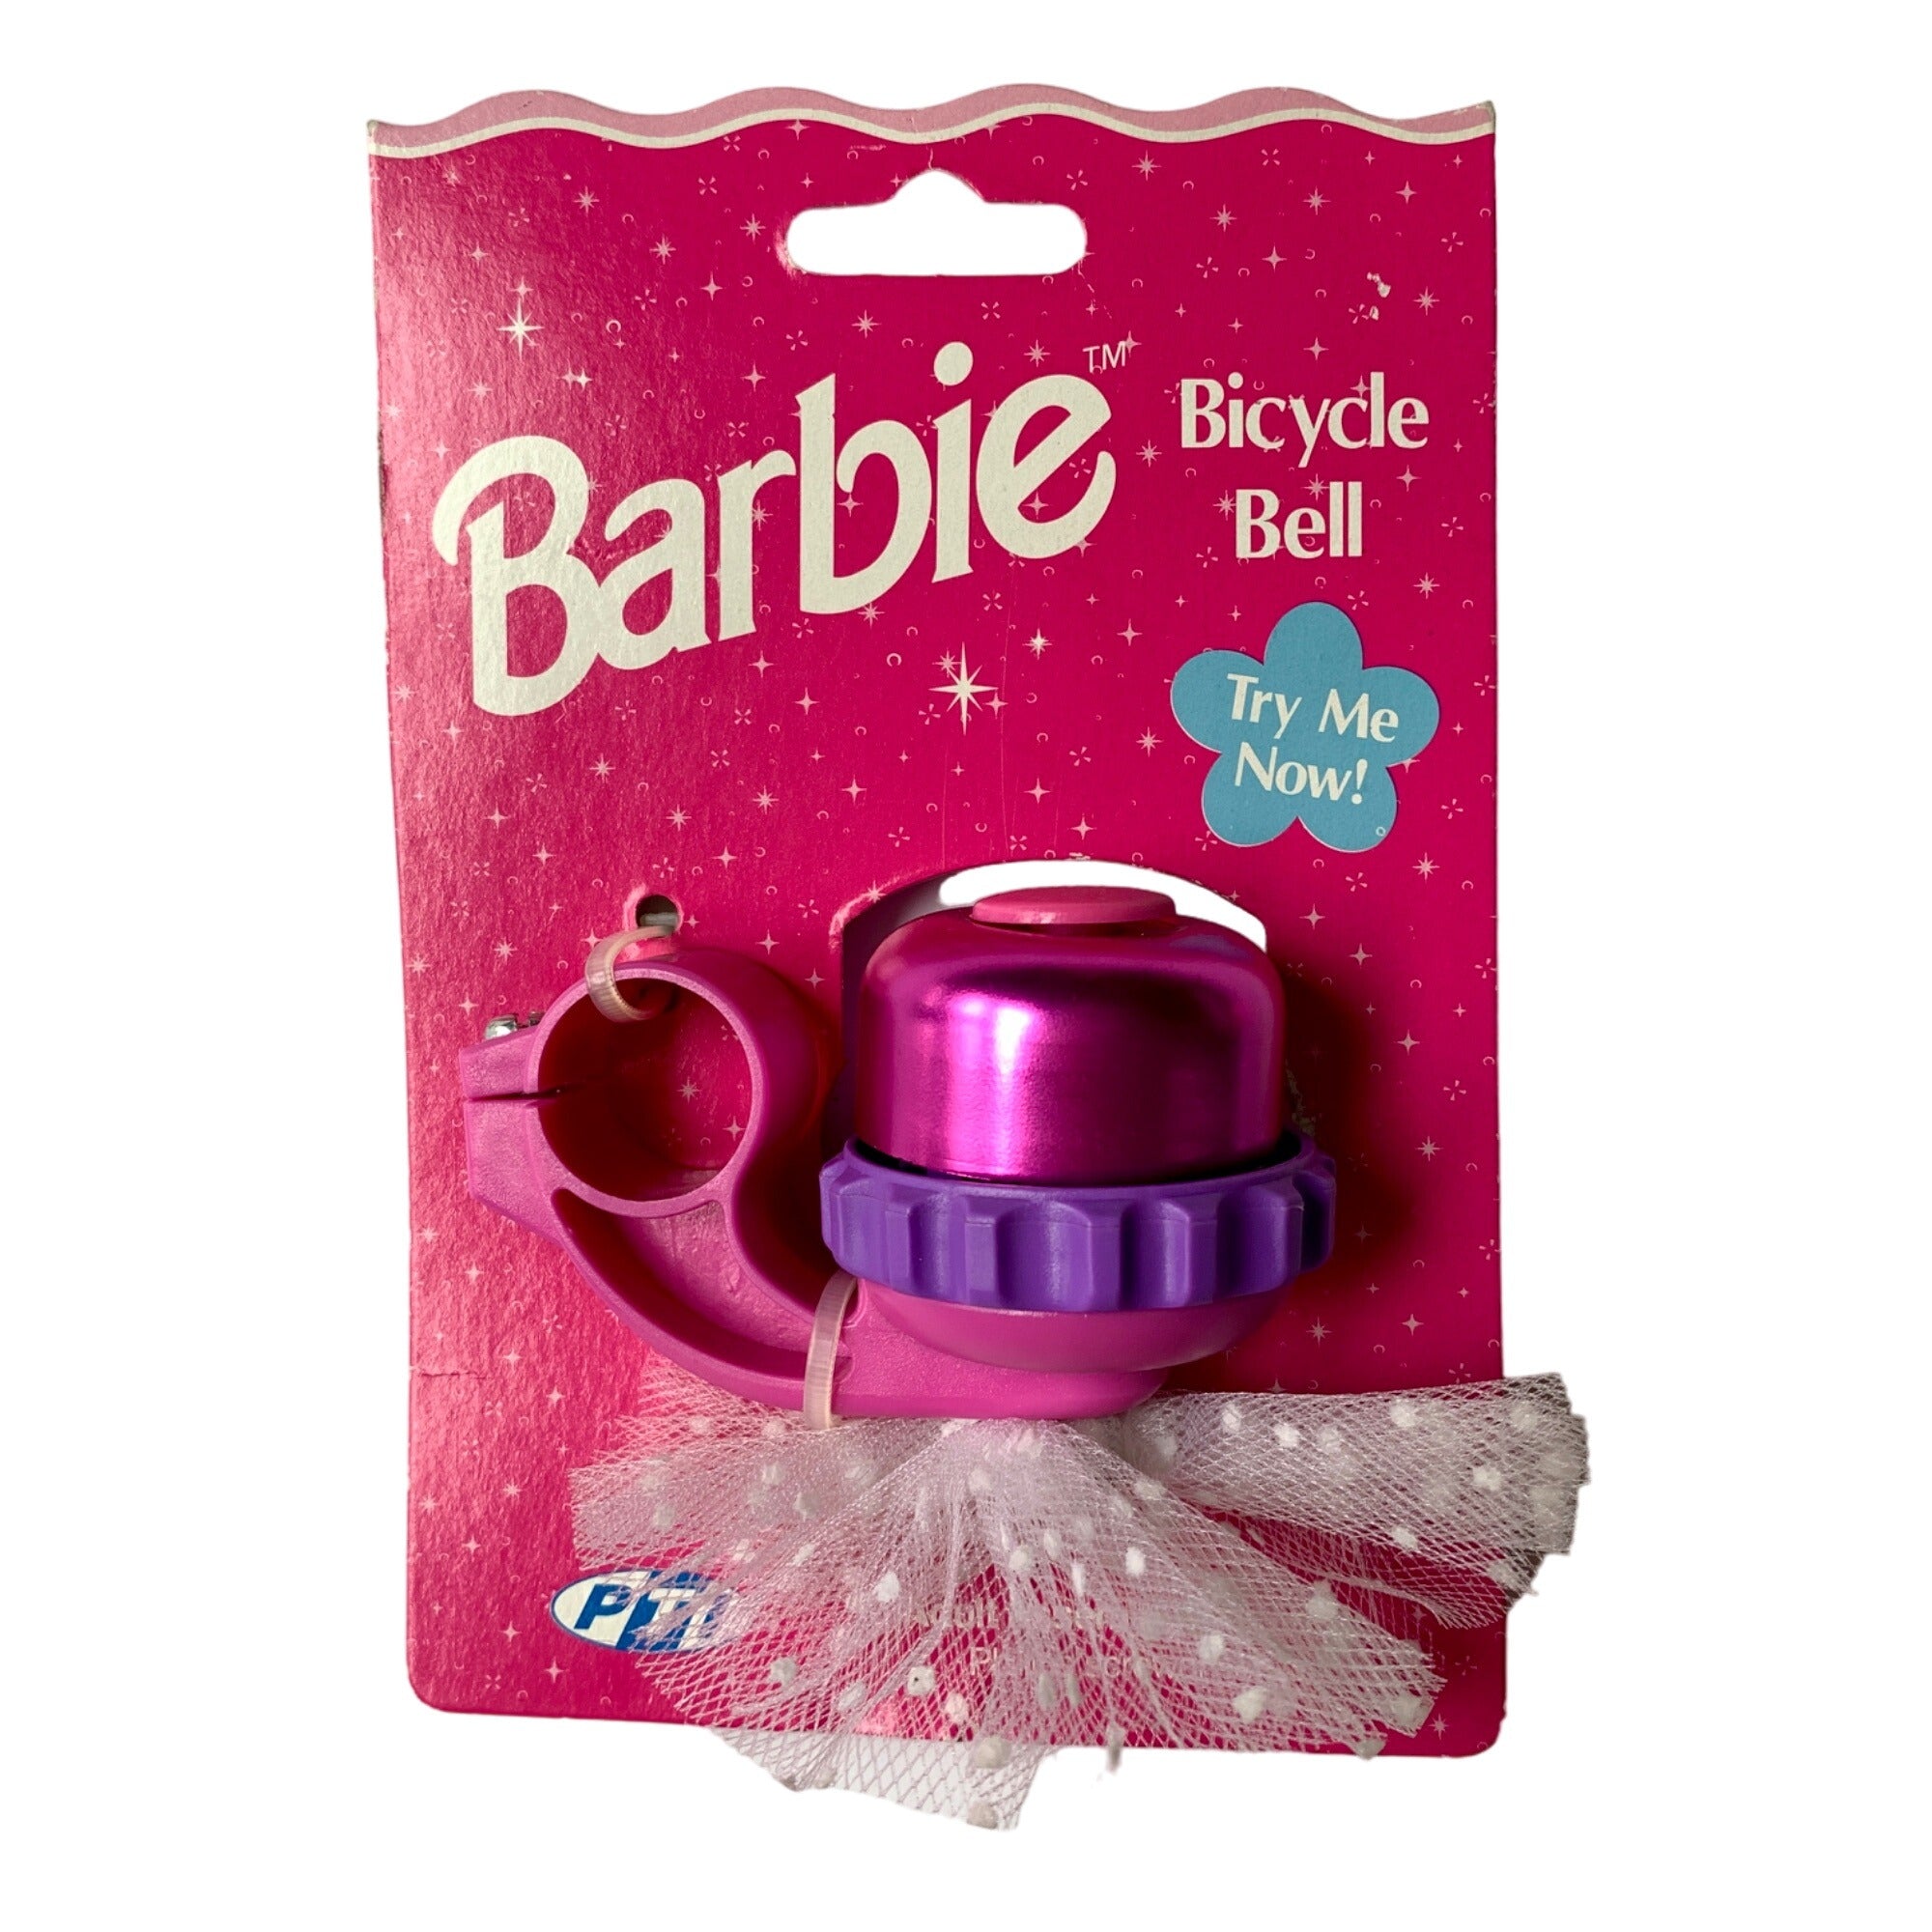 Barbie Bicycle Bell Vintage 1996 New